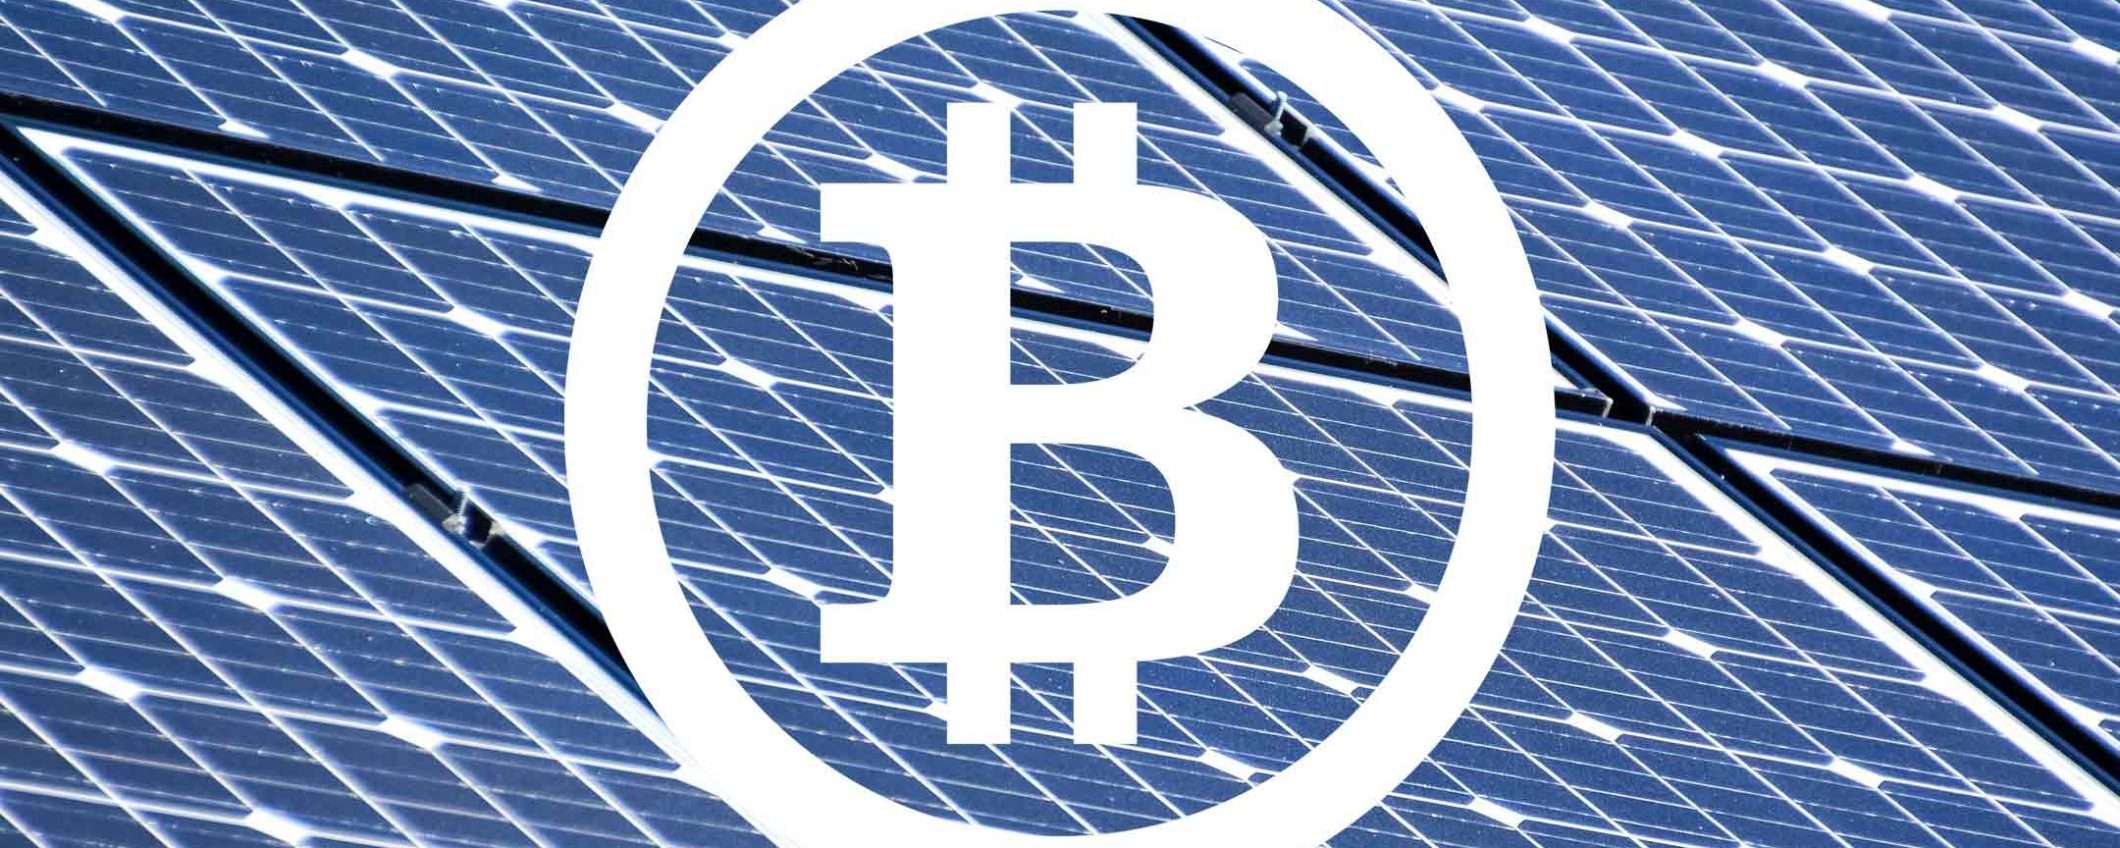 All'improvviso, il mining di Bitcoin è sostenibile